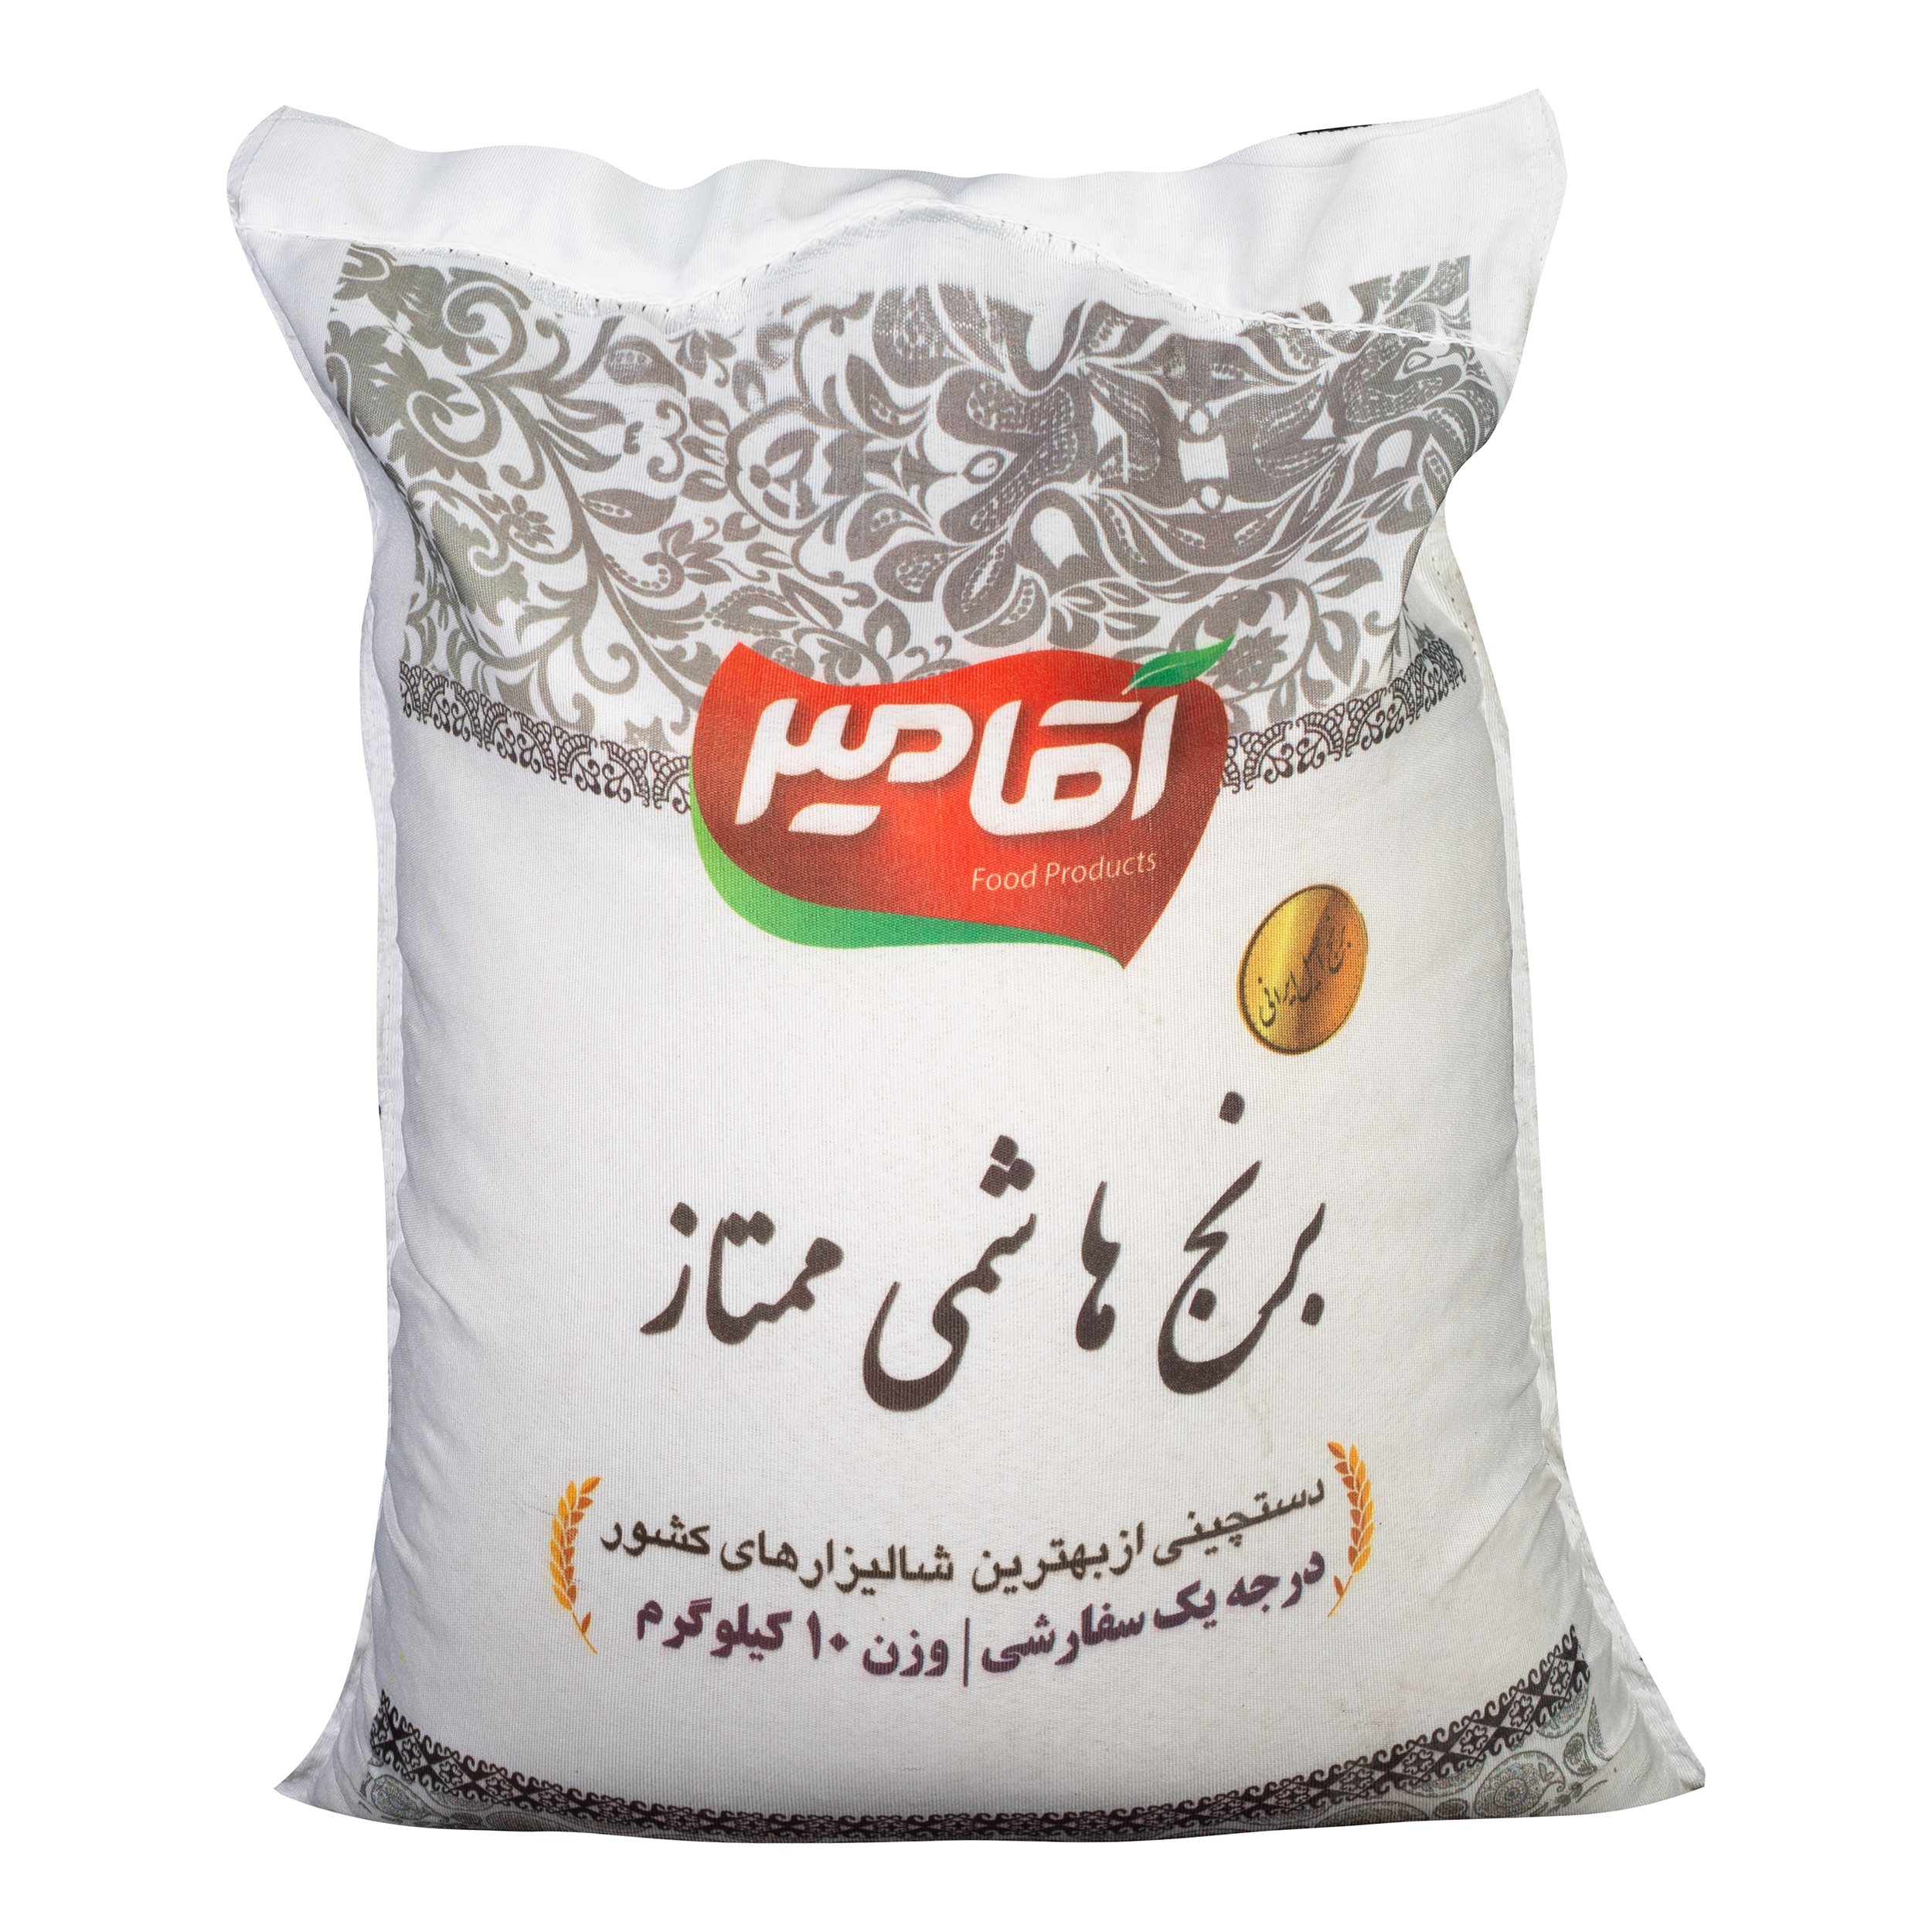 نکته خرید - قیمت روز برنج هاشمی ممتاز آقامیر - 10 کیلوگرم خرید